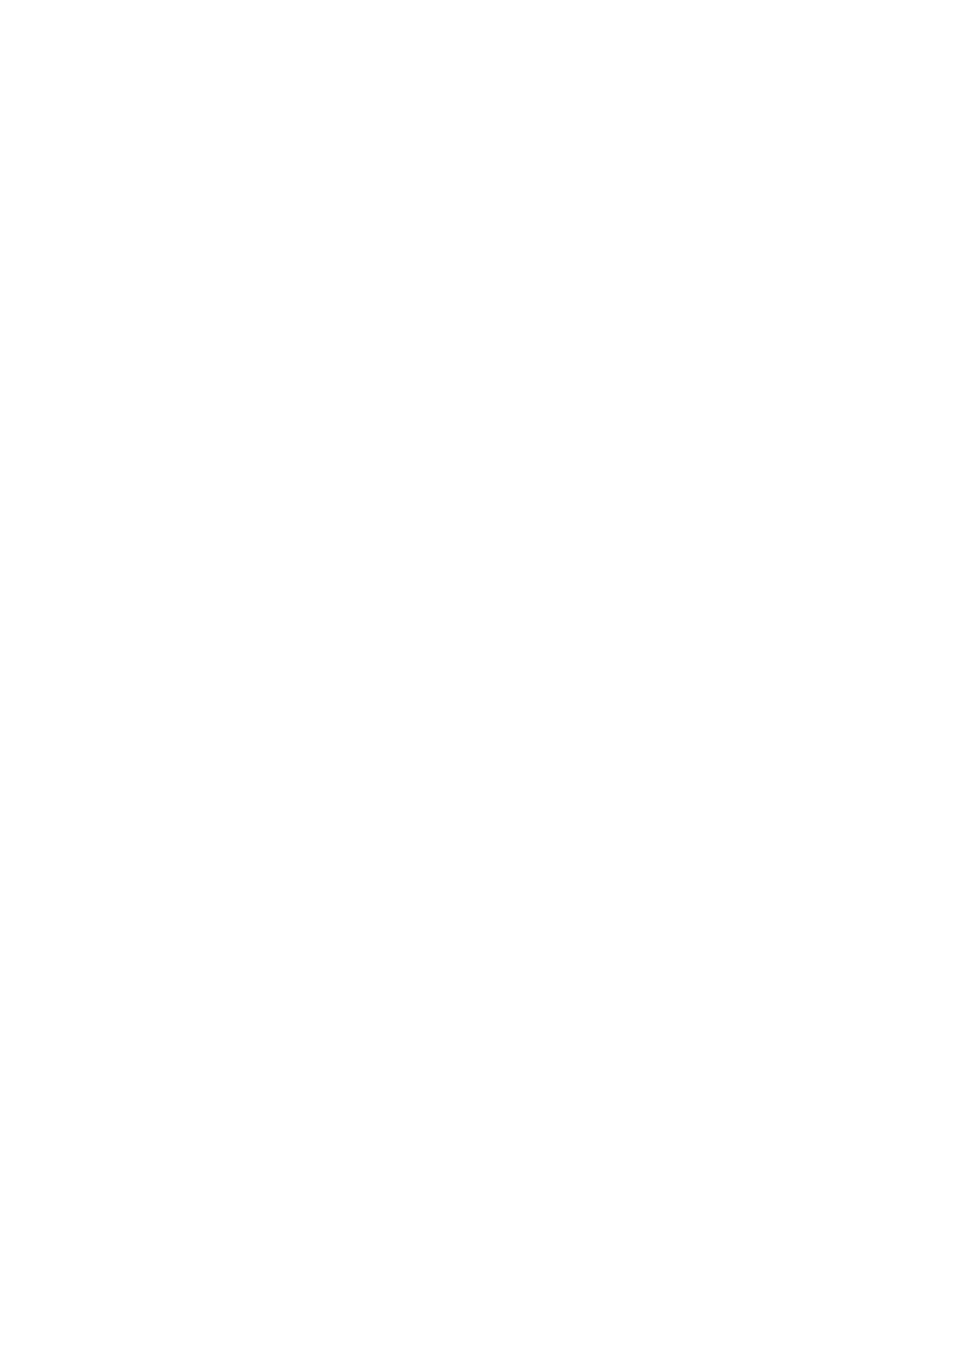 endring av a konto-beløpene fra og med august 2012 RS 10/2012 Samhandlingsreformen - kommunal medfinansiering - økte utgifter for Kvalsund kommune PS 54/2012 Søknad om bevilling for skjenking av